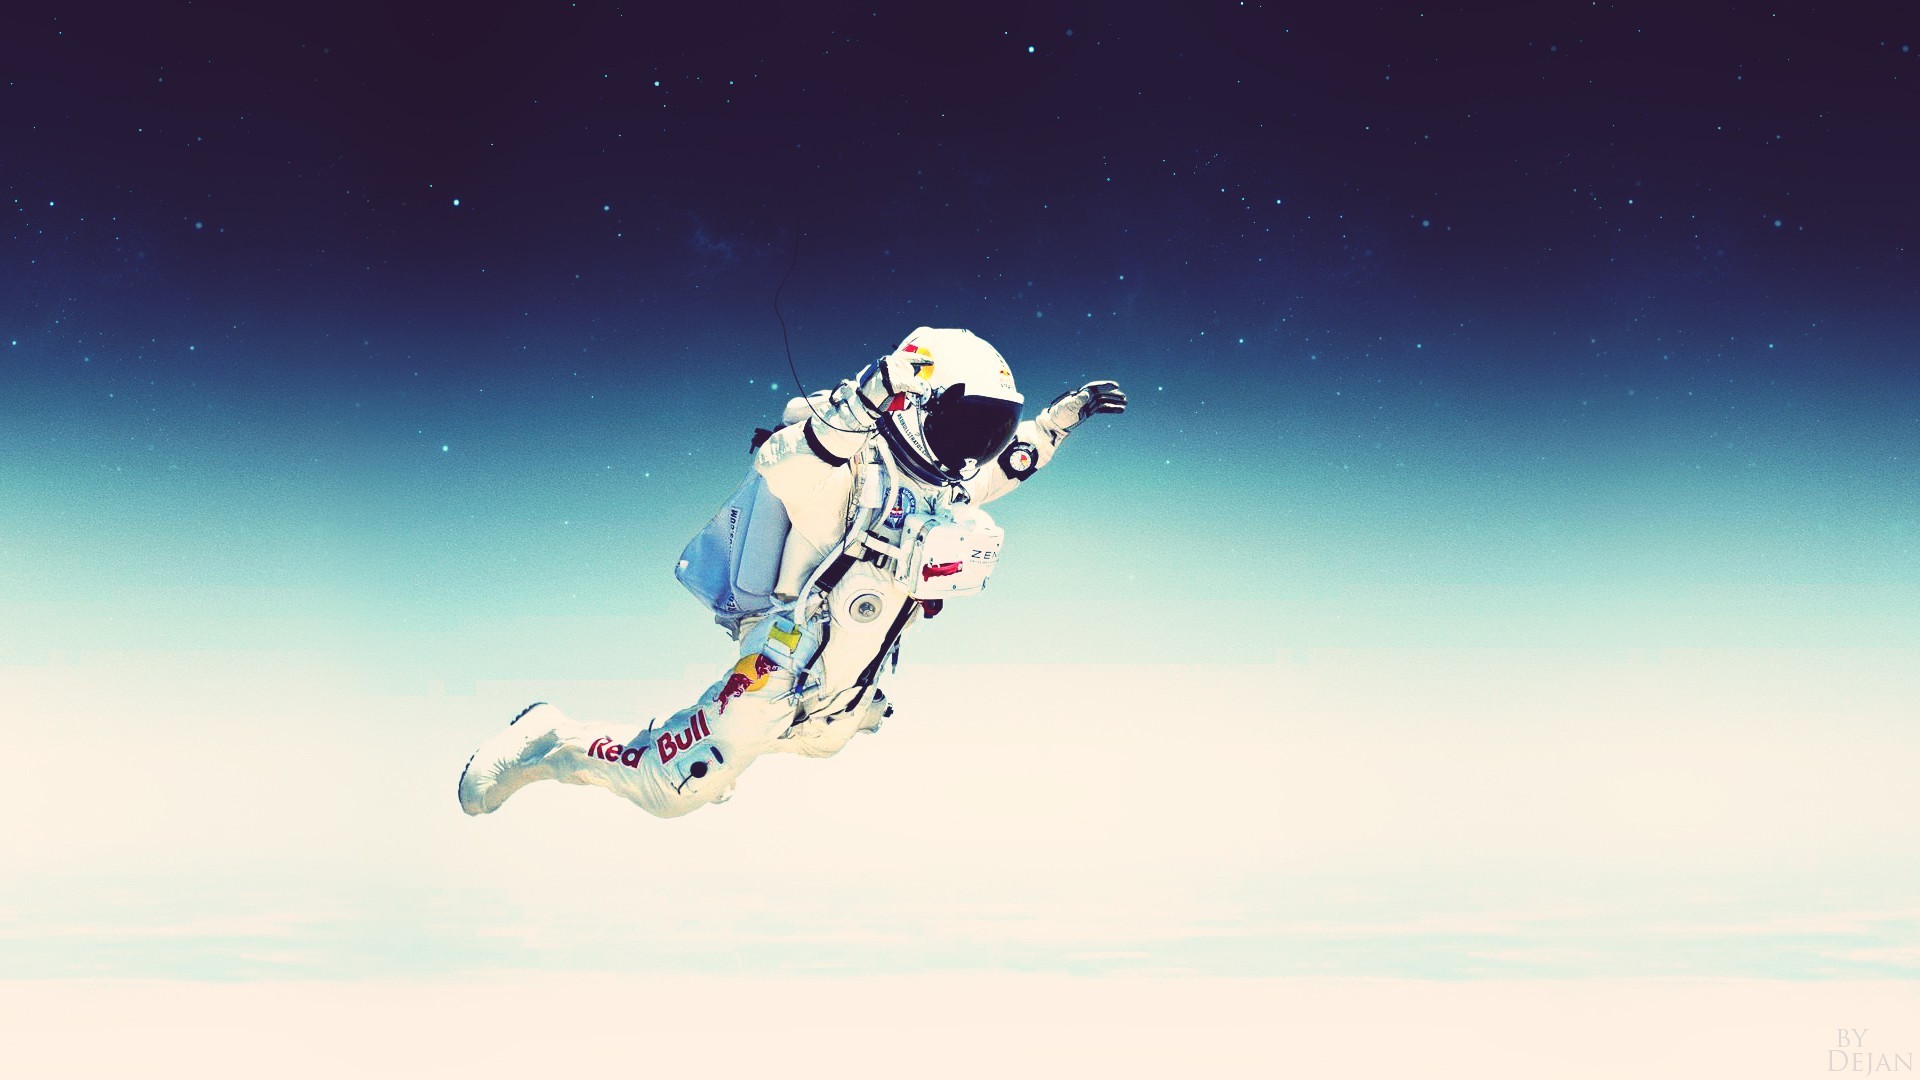 People 1920x1080 astronaut spacesuit Felix Baumgartner atmosphere digital art space art artwork falling space stars cyan blue white